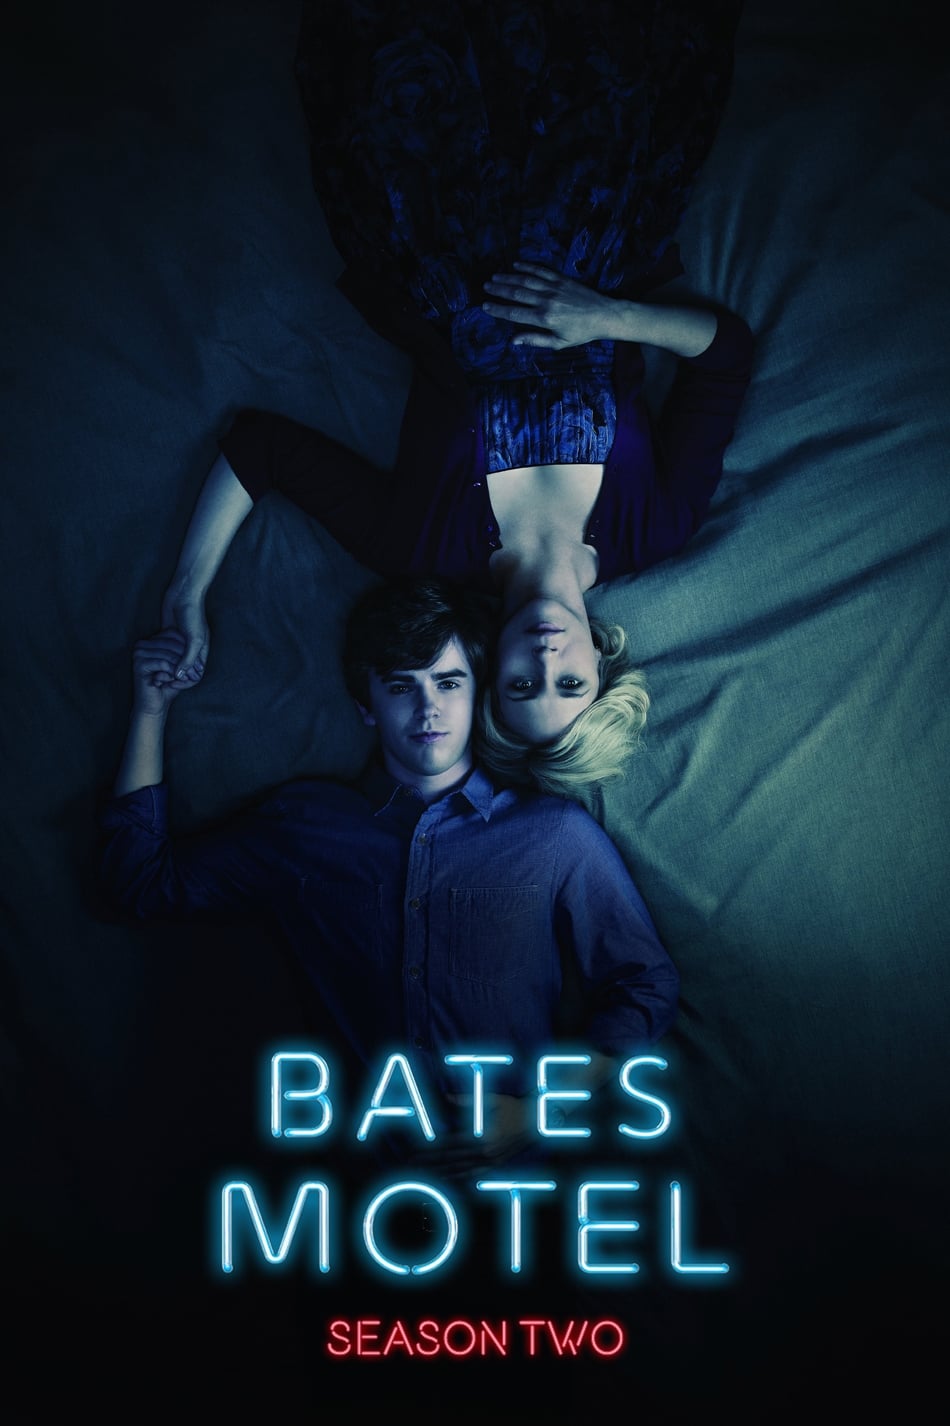 ดูหนังออนไลน์ Bates Motel (2014) Season 2 ซับไทย EP 5 เบส โมเทล ปี2 ตอนที่5 (ซับไทย)